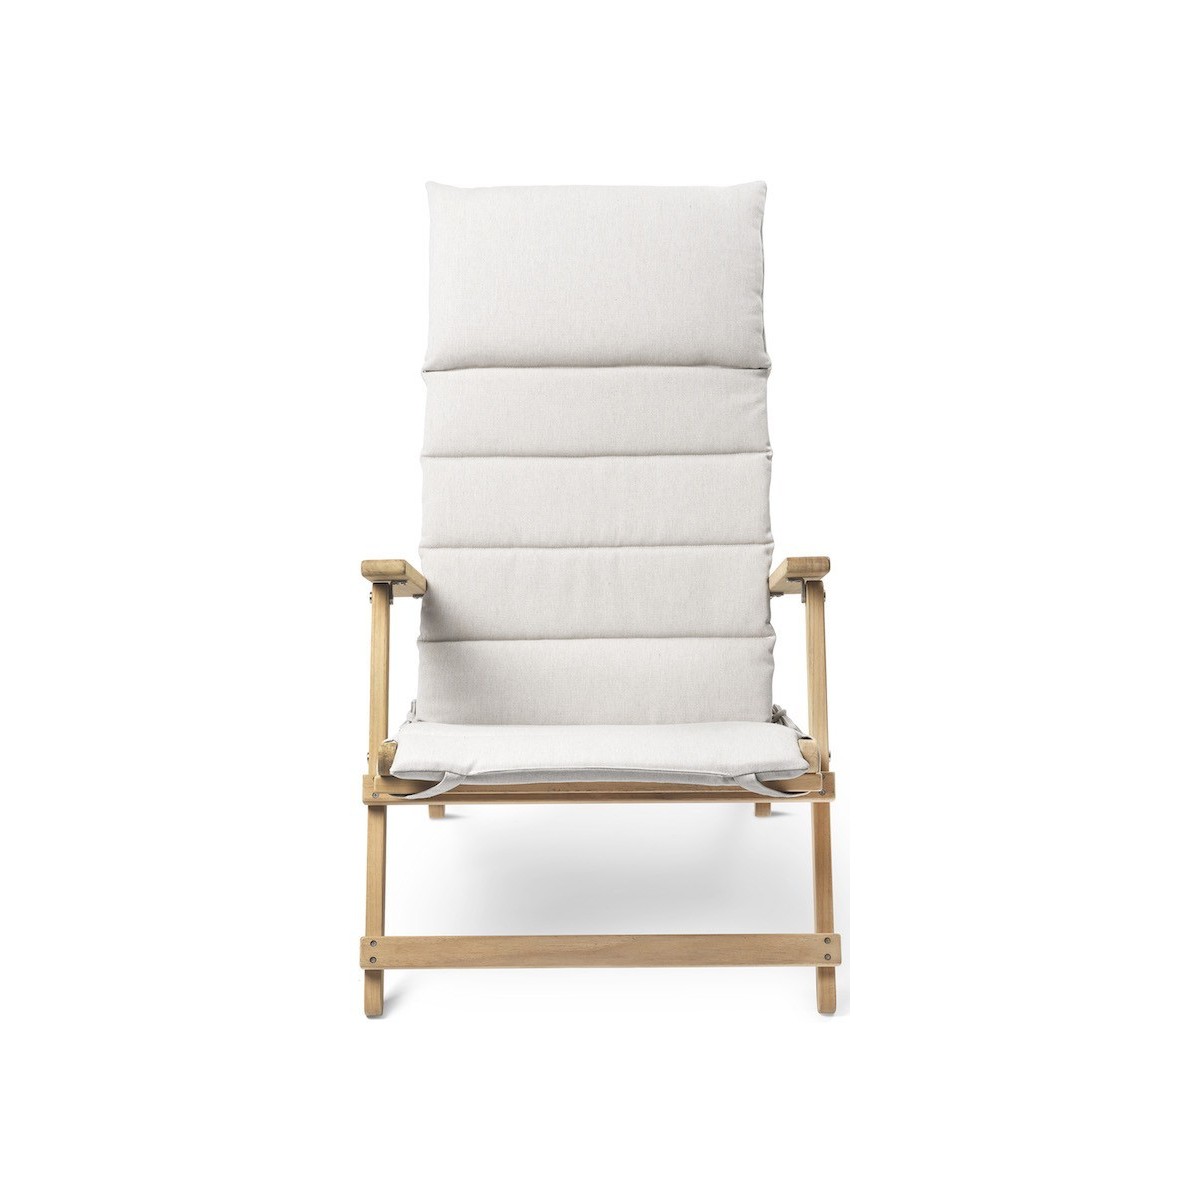 Cushion for Deck chair BM5568